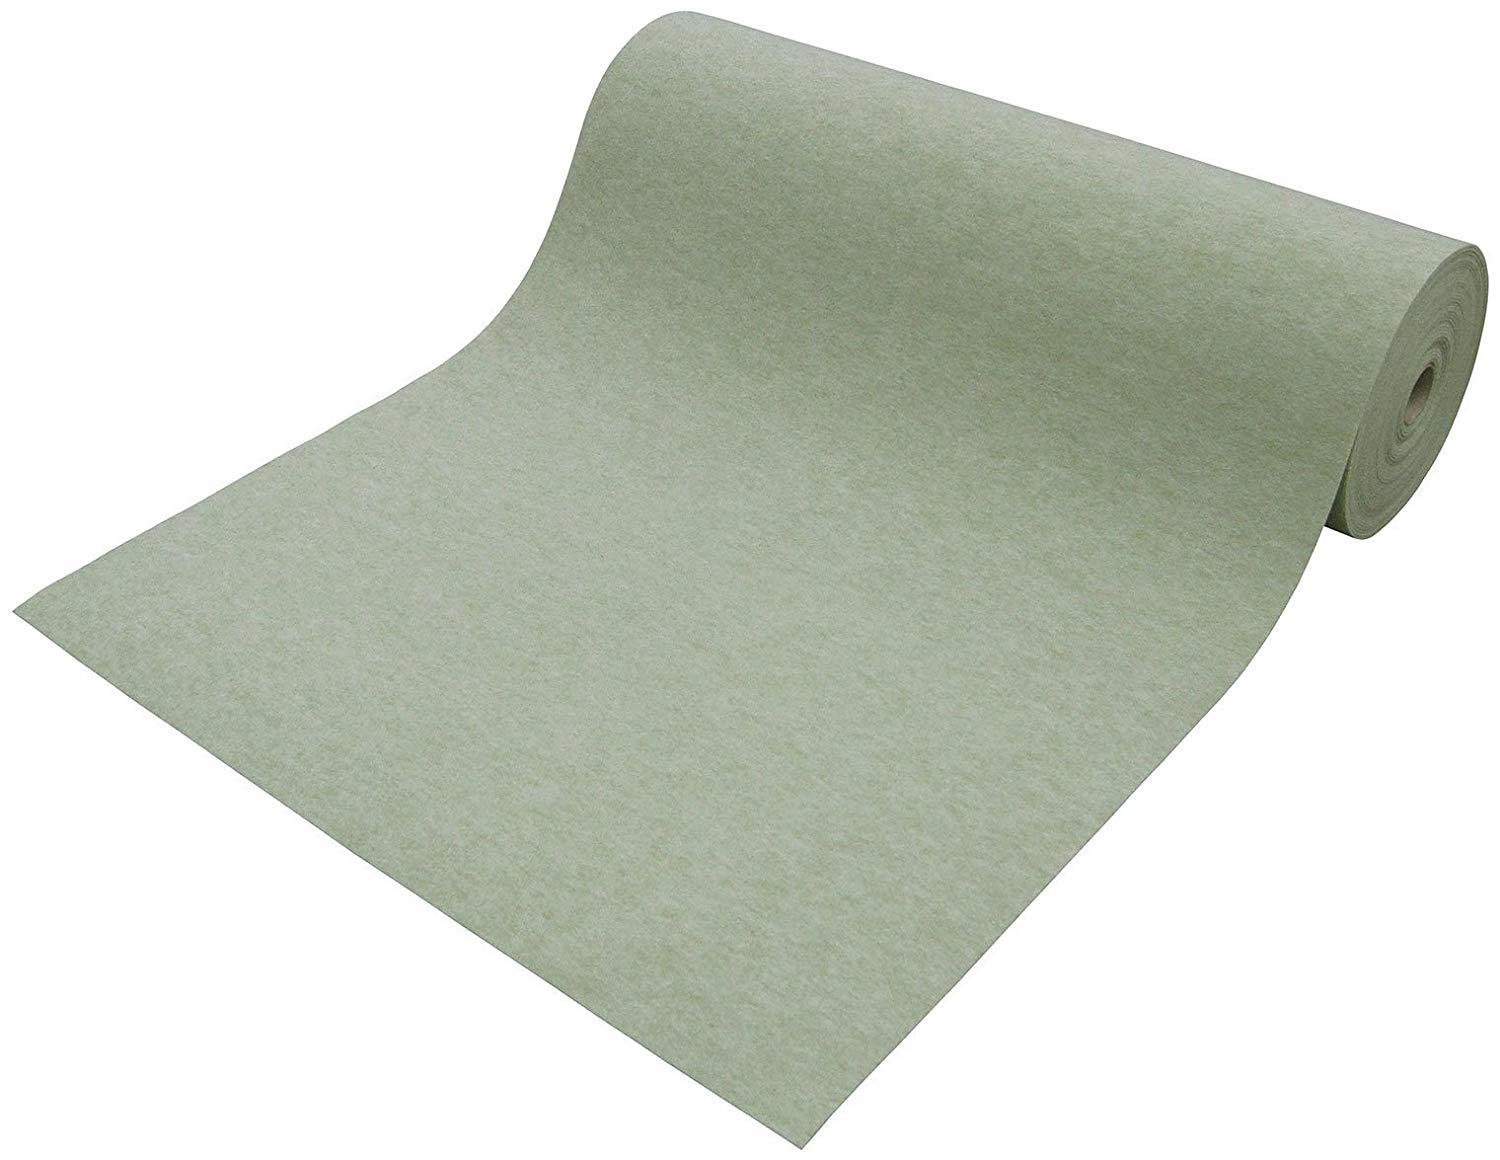 ワタナベ工業 防炎 パンチカーペット エコパンチ グリーン 91cm巾×20m巻 EP-503S-20